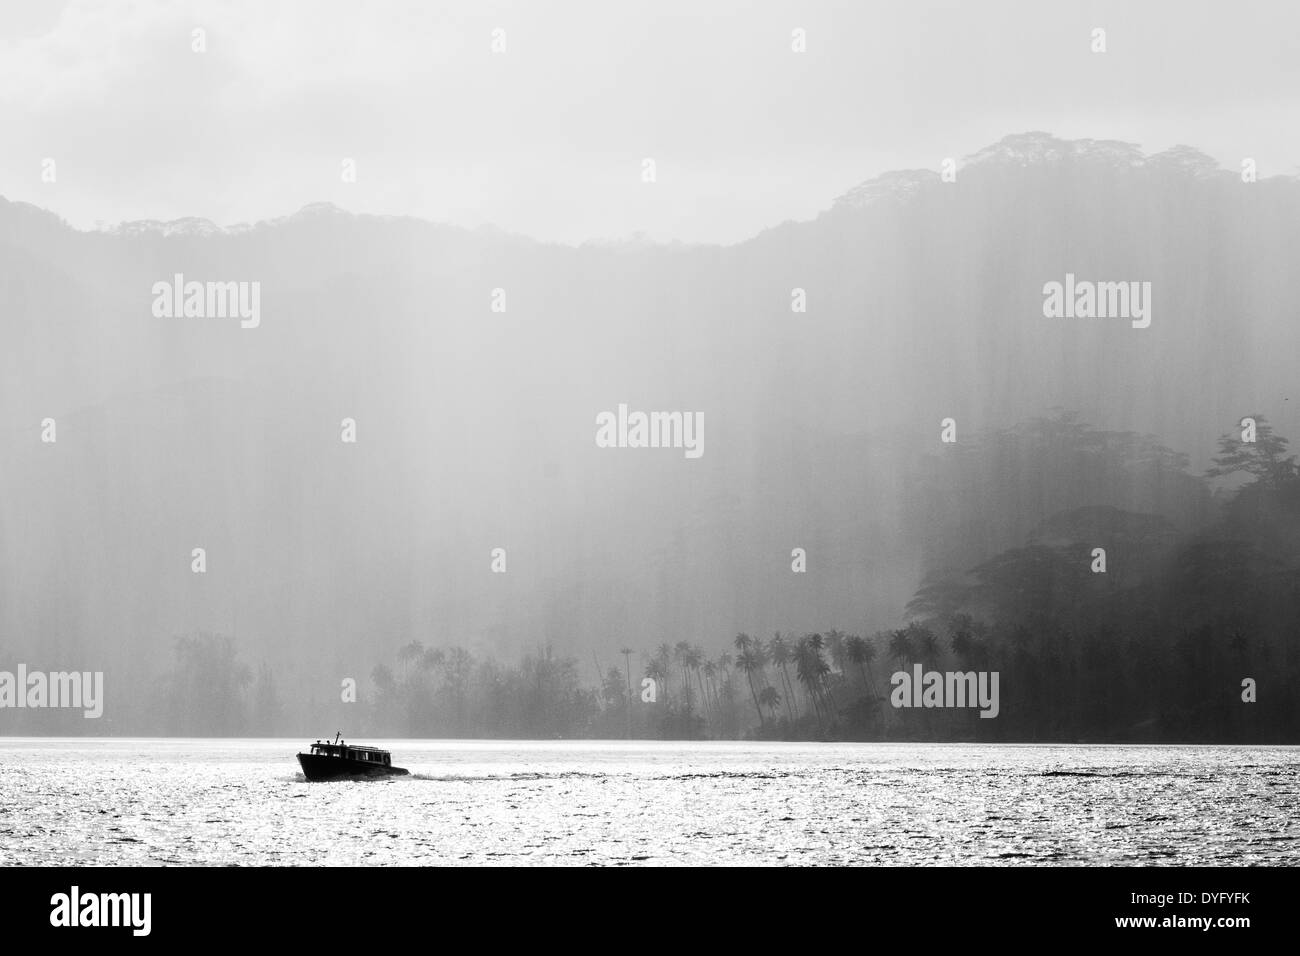 Silhouette de bateau contre douche pluie tomber sur les couches d'arbres tropicaux en polynésie francaise Banque D'Images